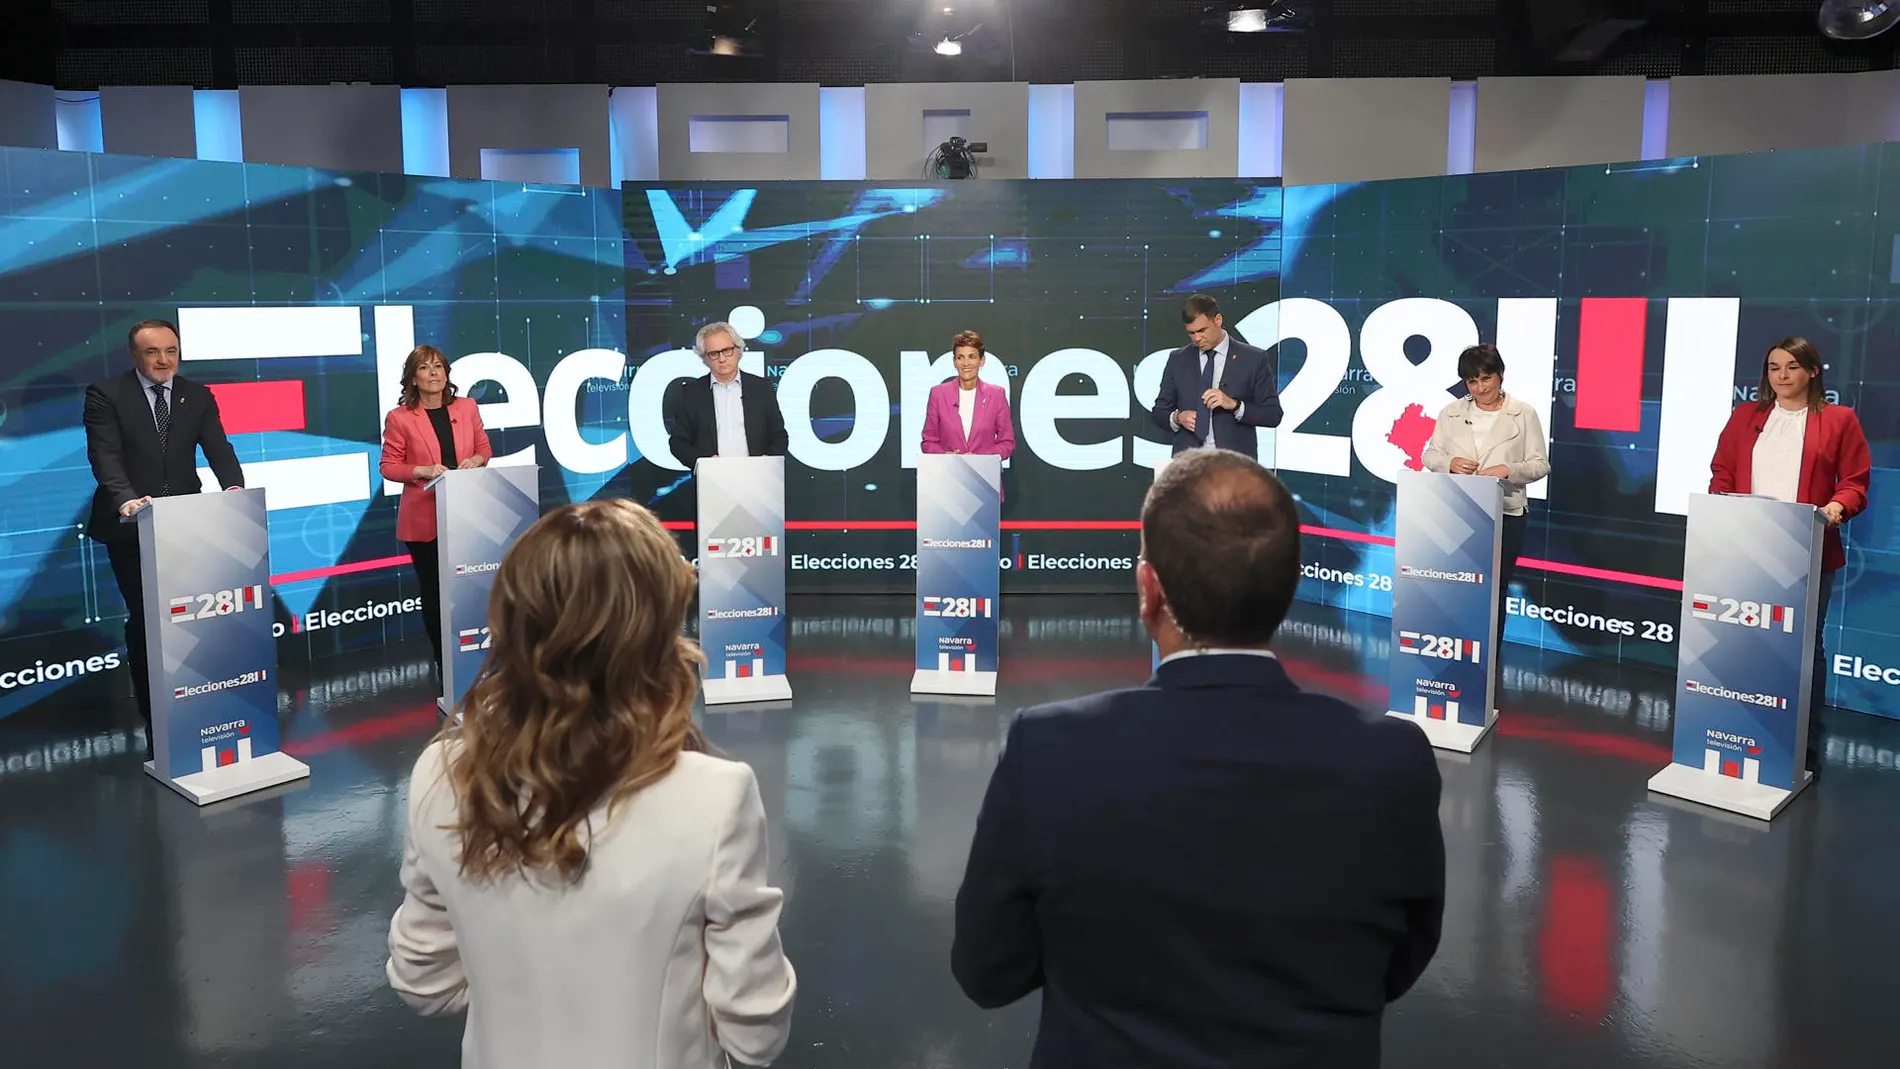 Fotografía del debate electoral en Navarra